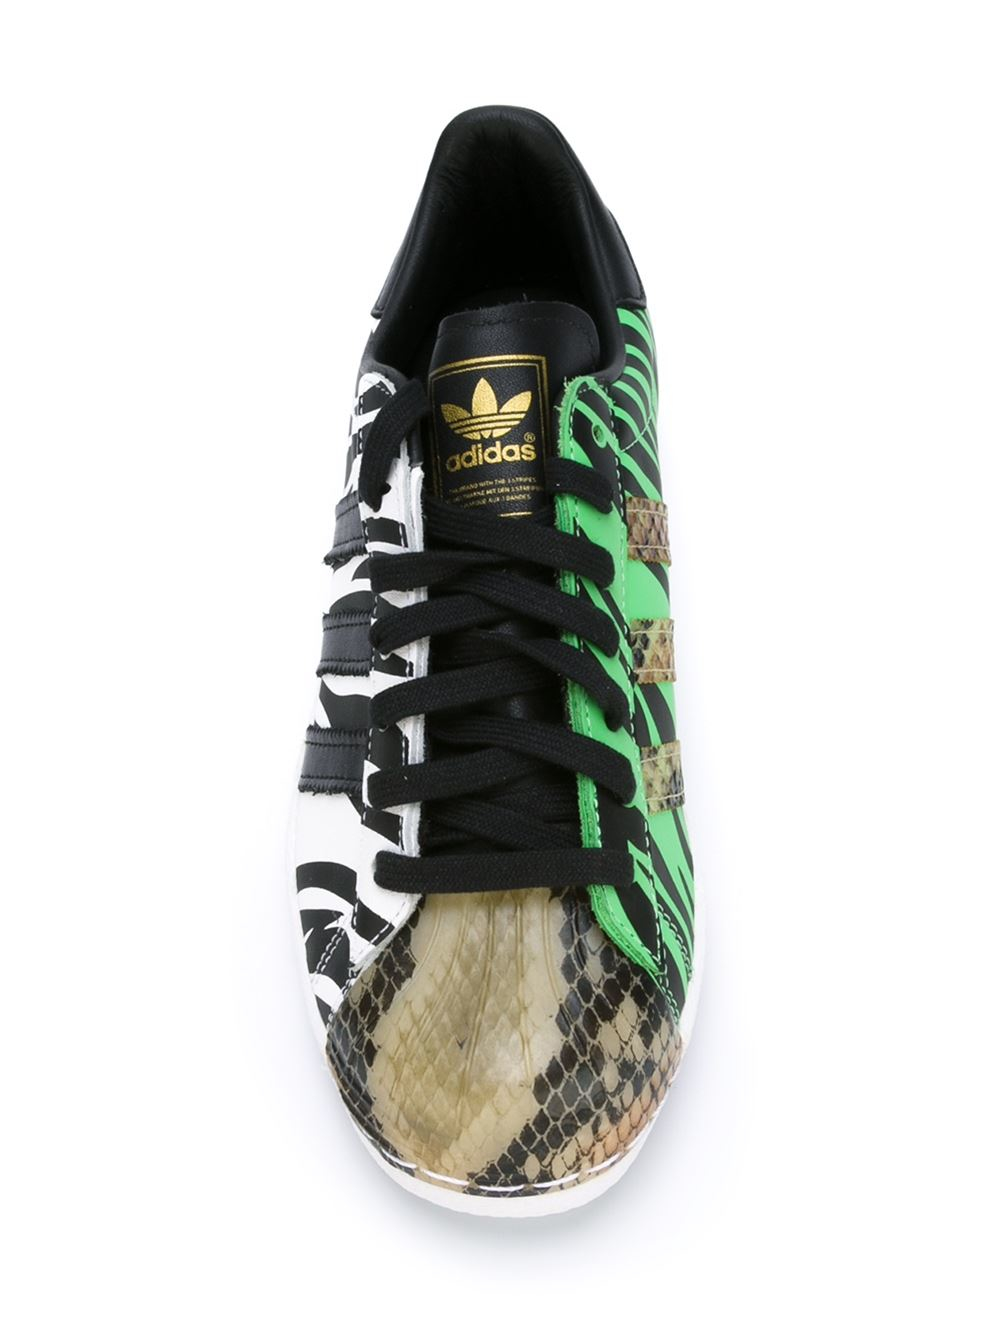 adidas Originals Superstar Oddity Zebra Low-Top Sneakers in Black for Men -  Lyst